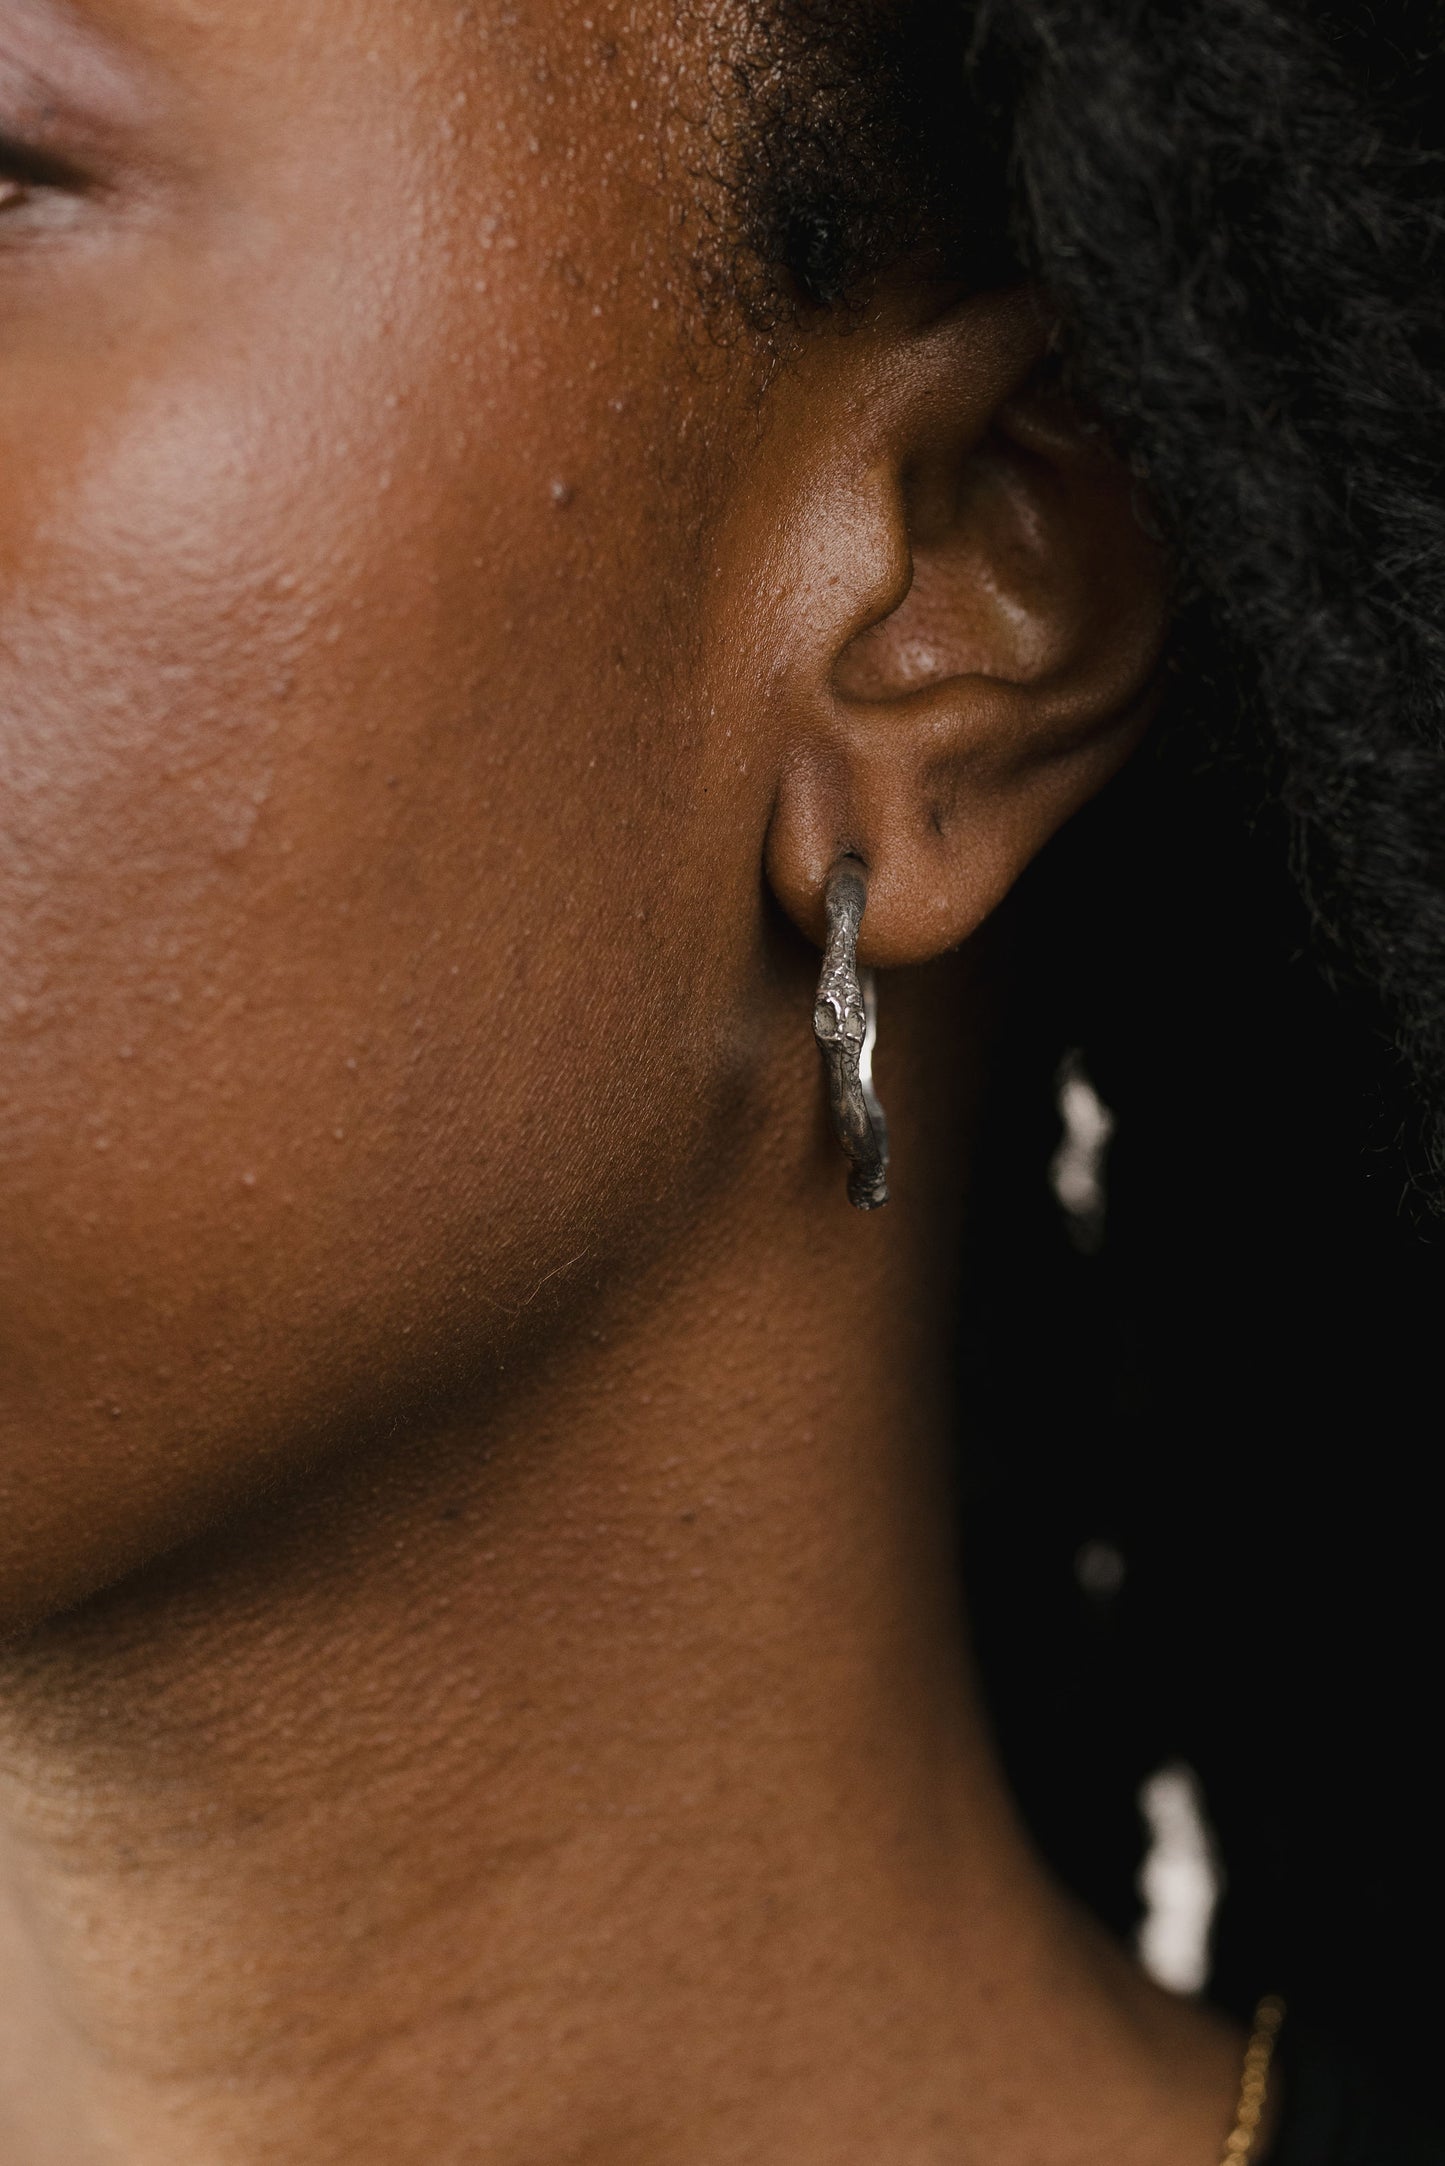 Oxidized sterling earrings on model